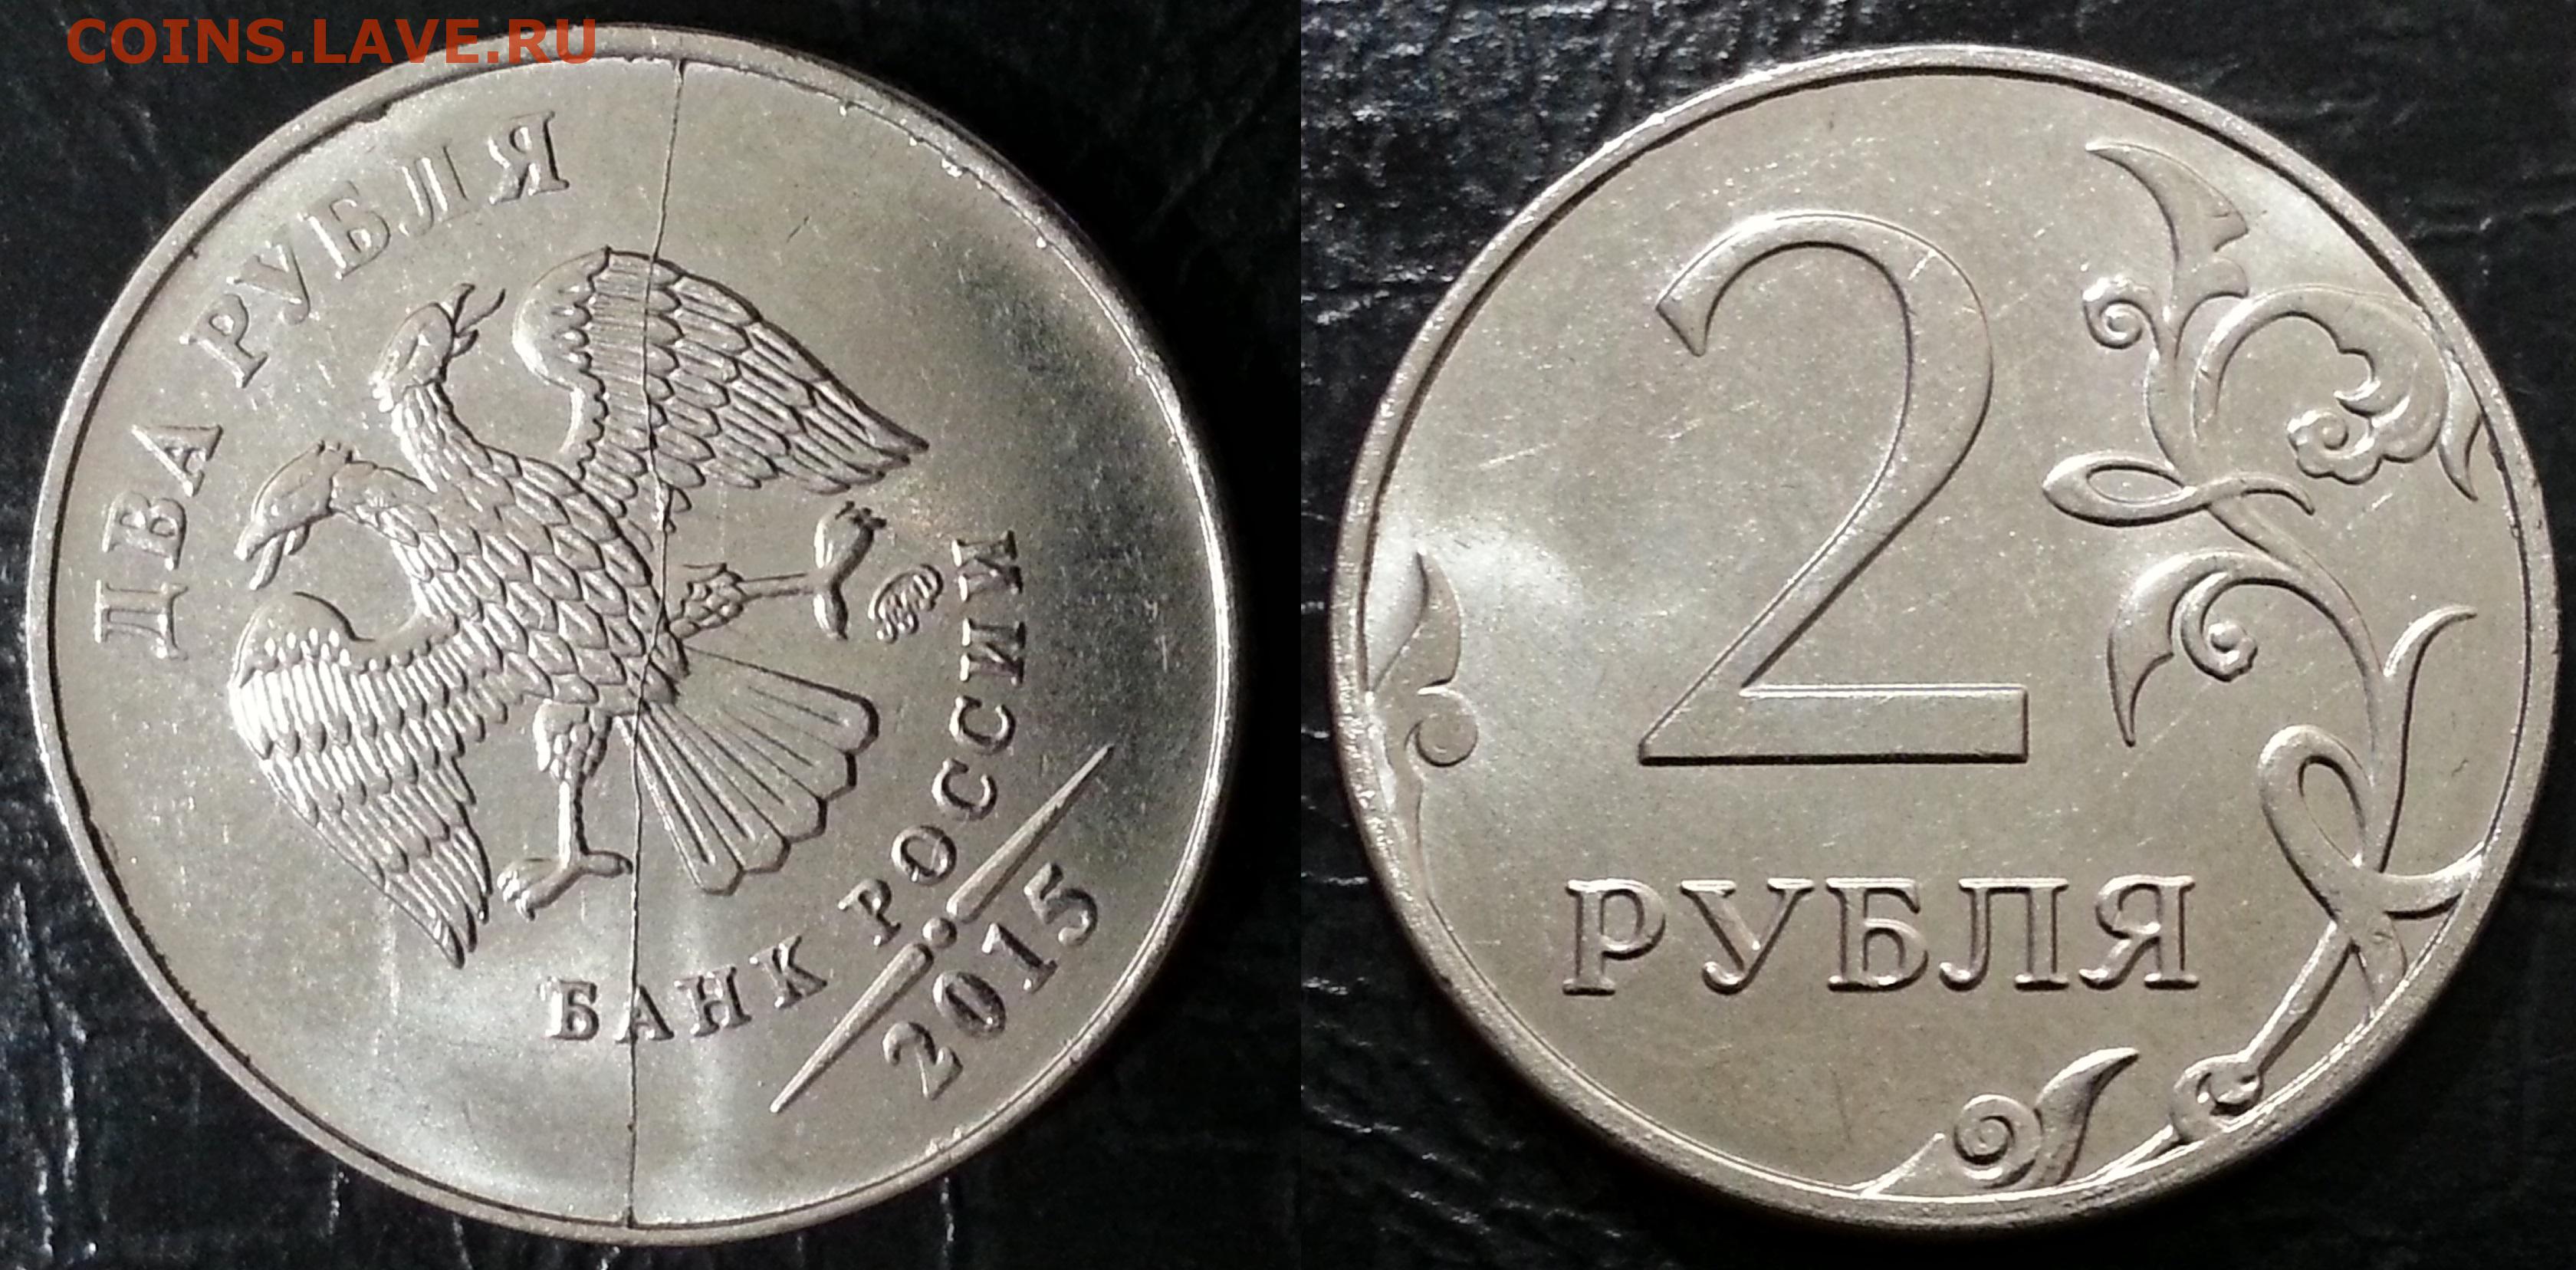 1 руб 2015 года. 2 Рубля 2015. 2 Рубля 2015 года. Серебряные 2 рубля 2016. Фото 2 рублей 2015 год.